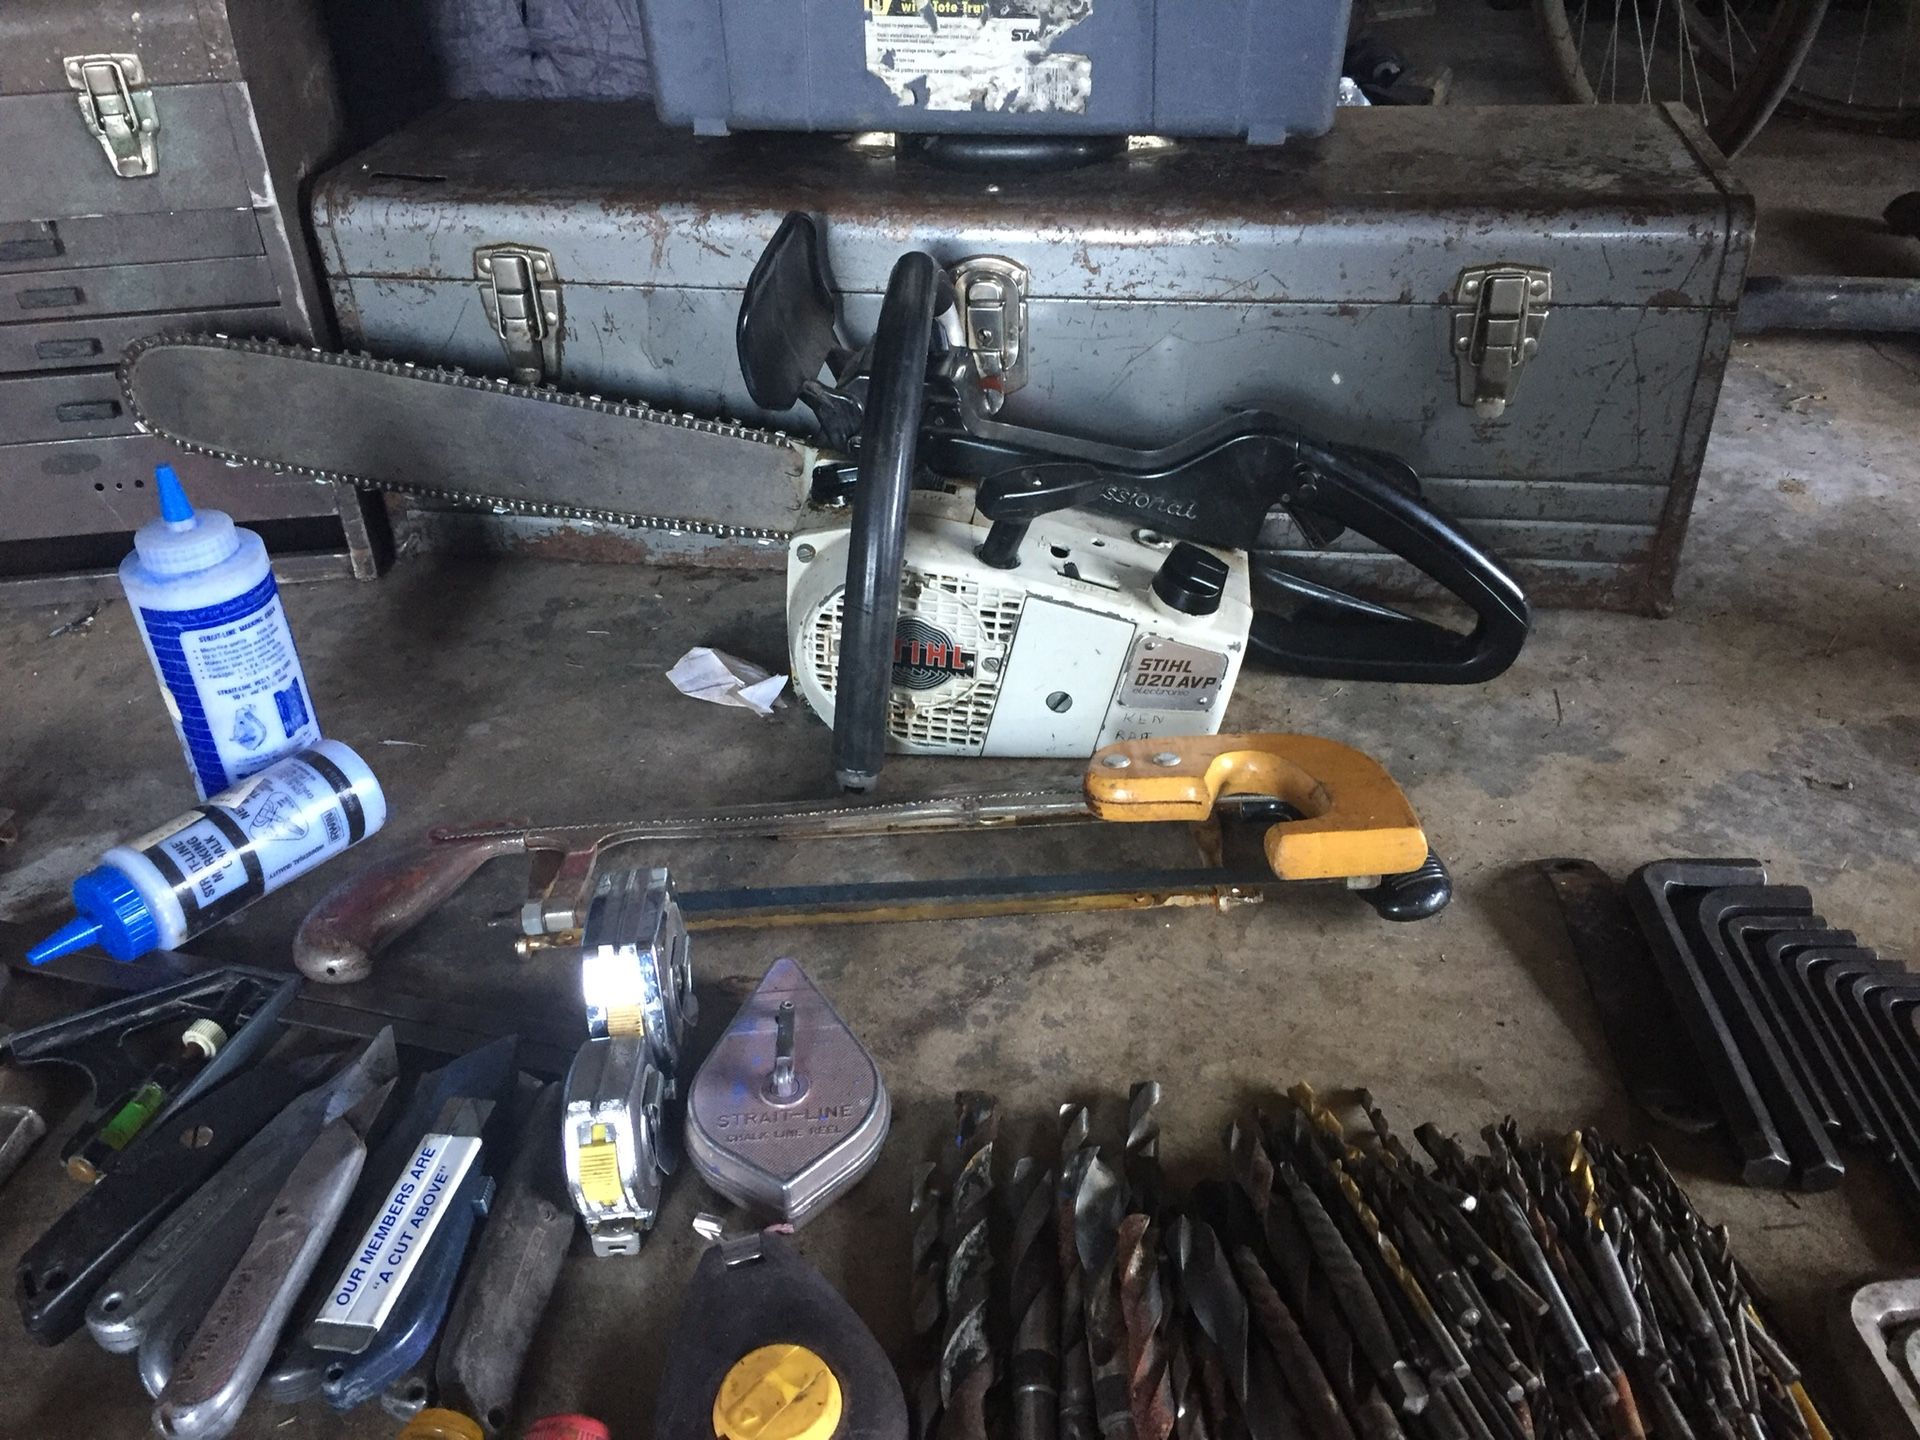 Chainsaw n tools plus